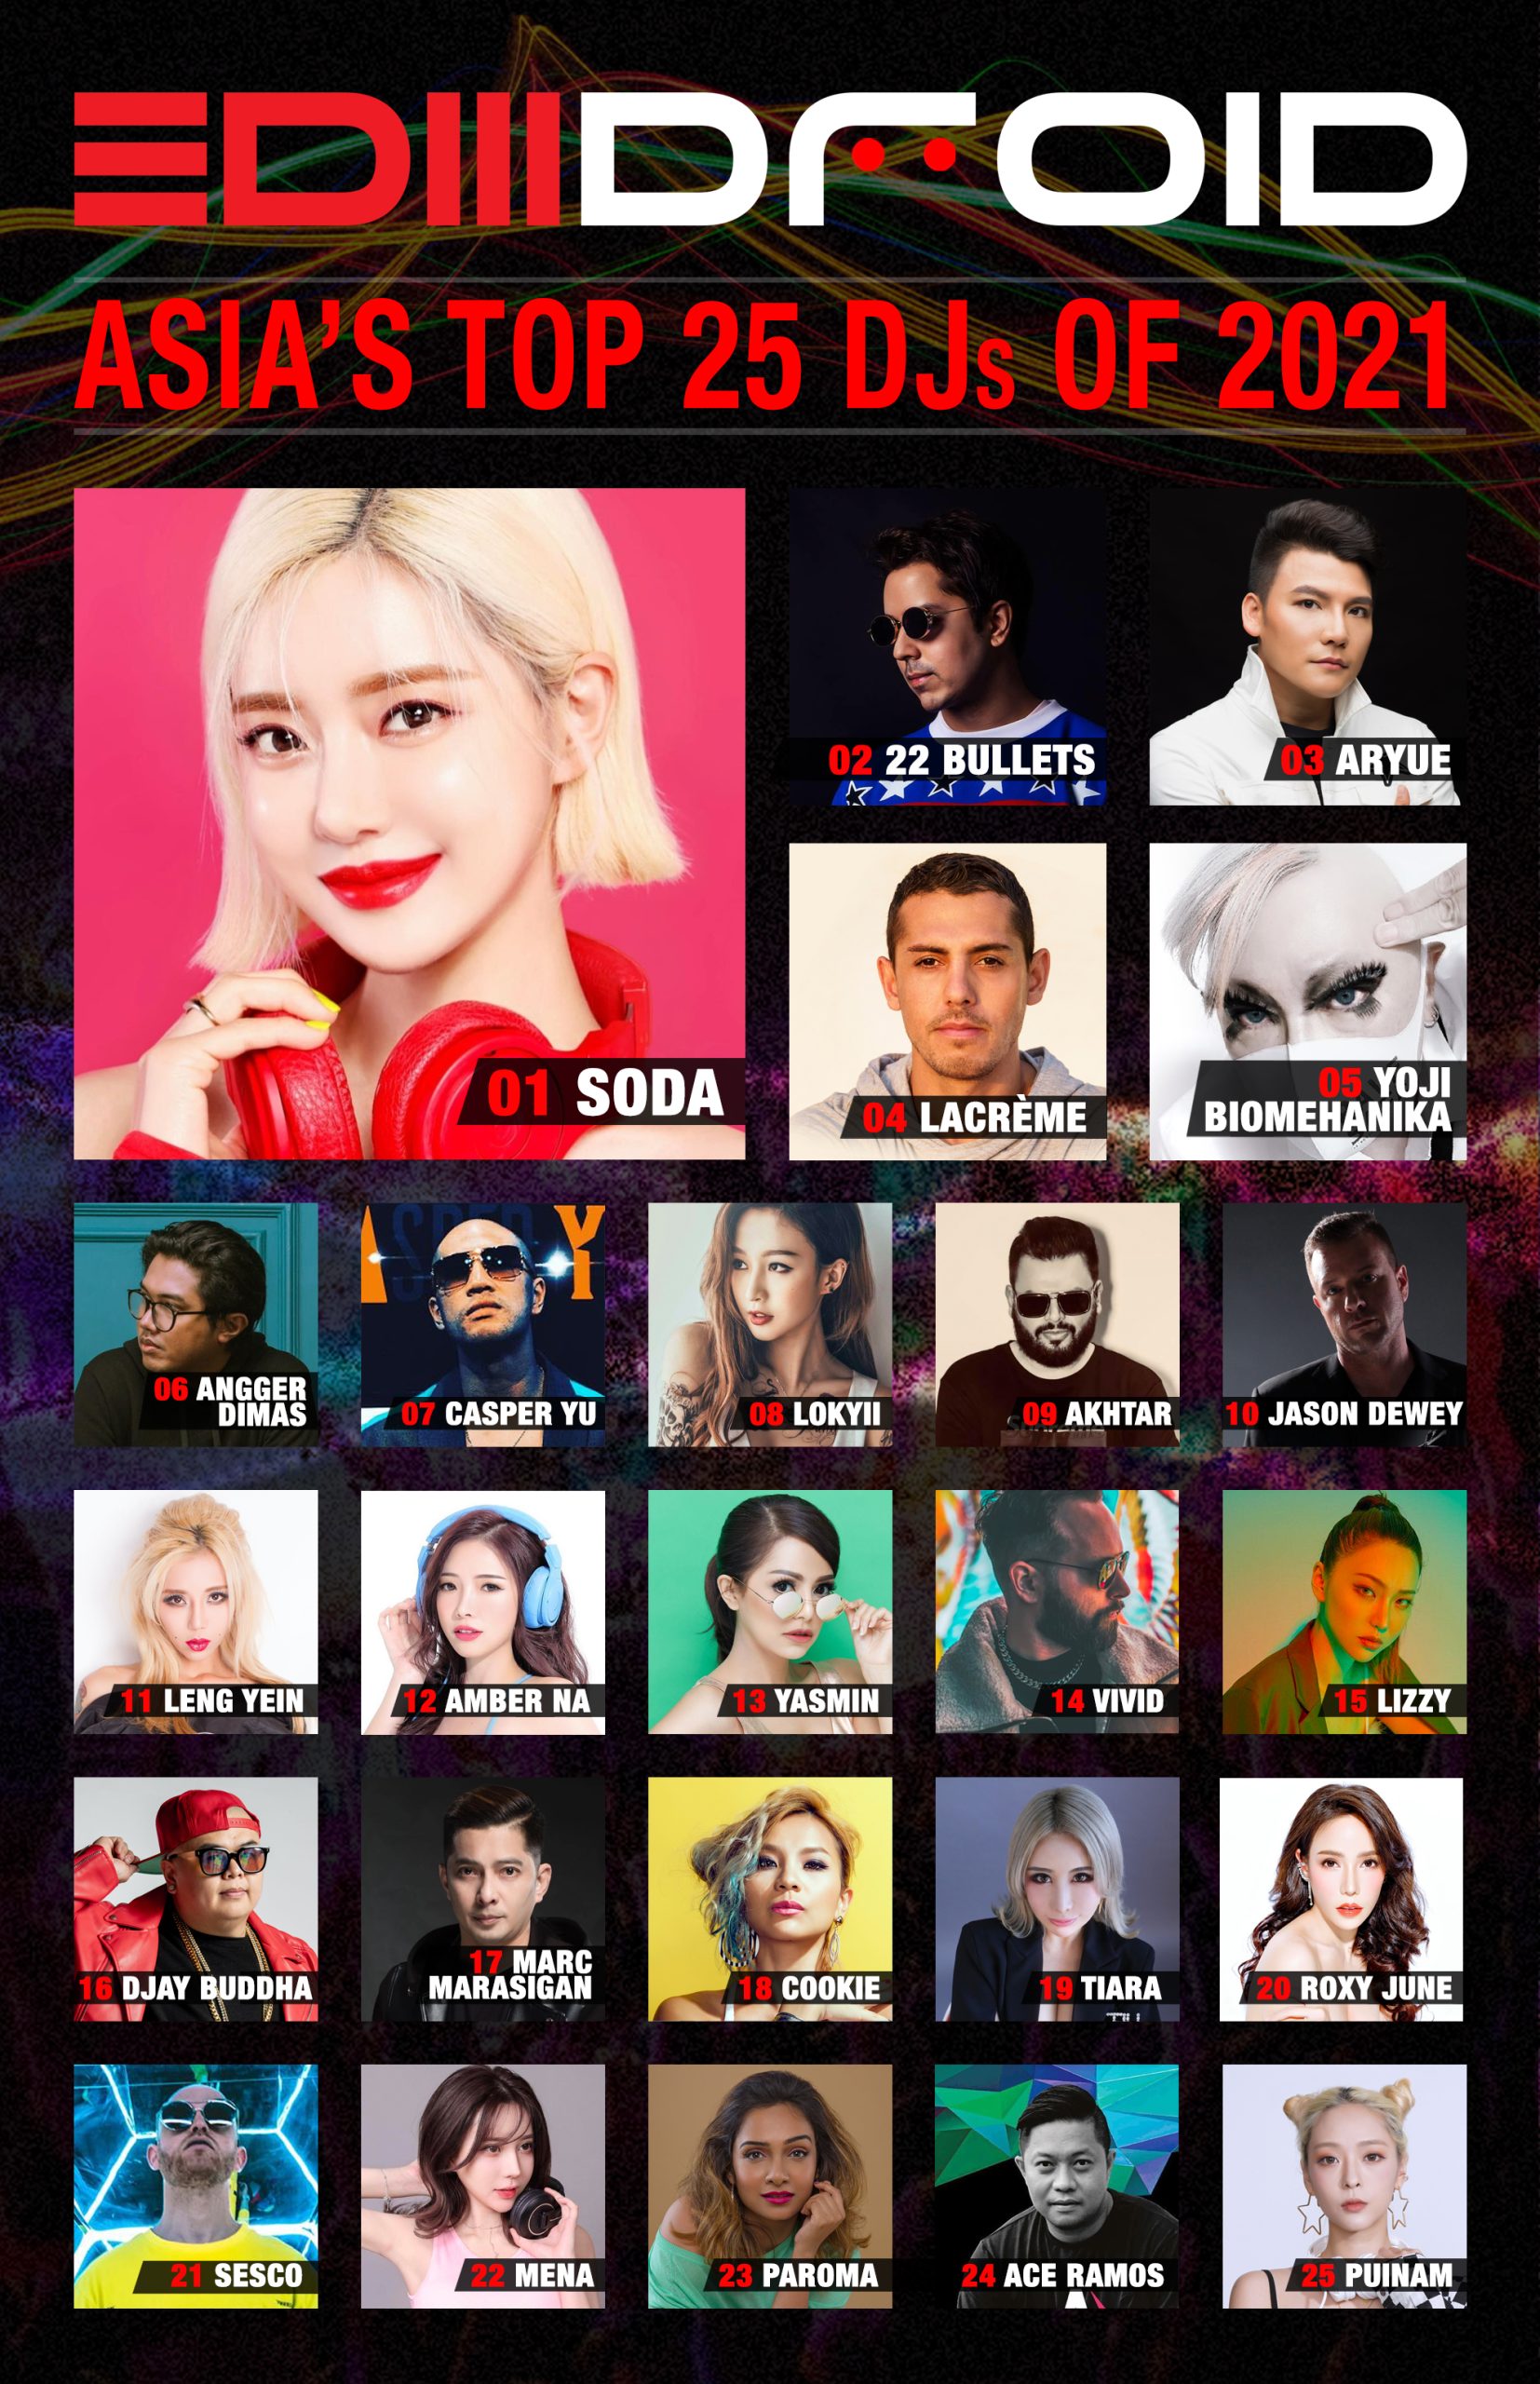 Asia’s DJs of 2021